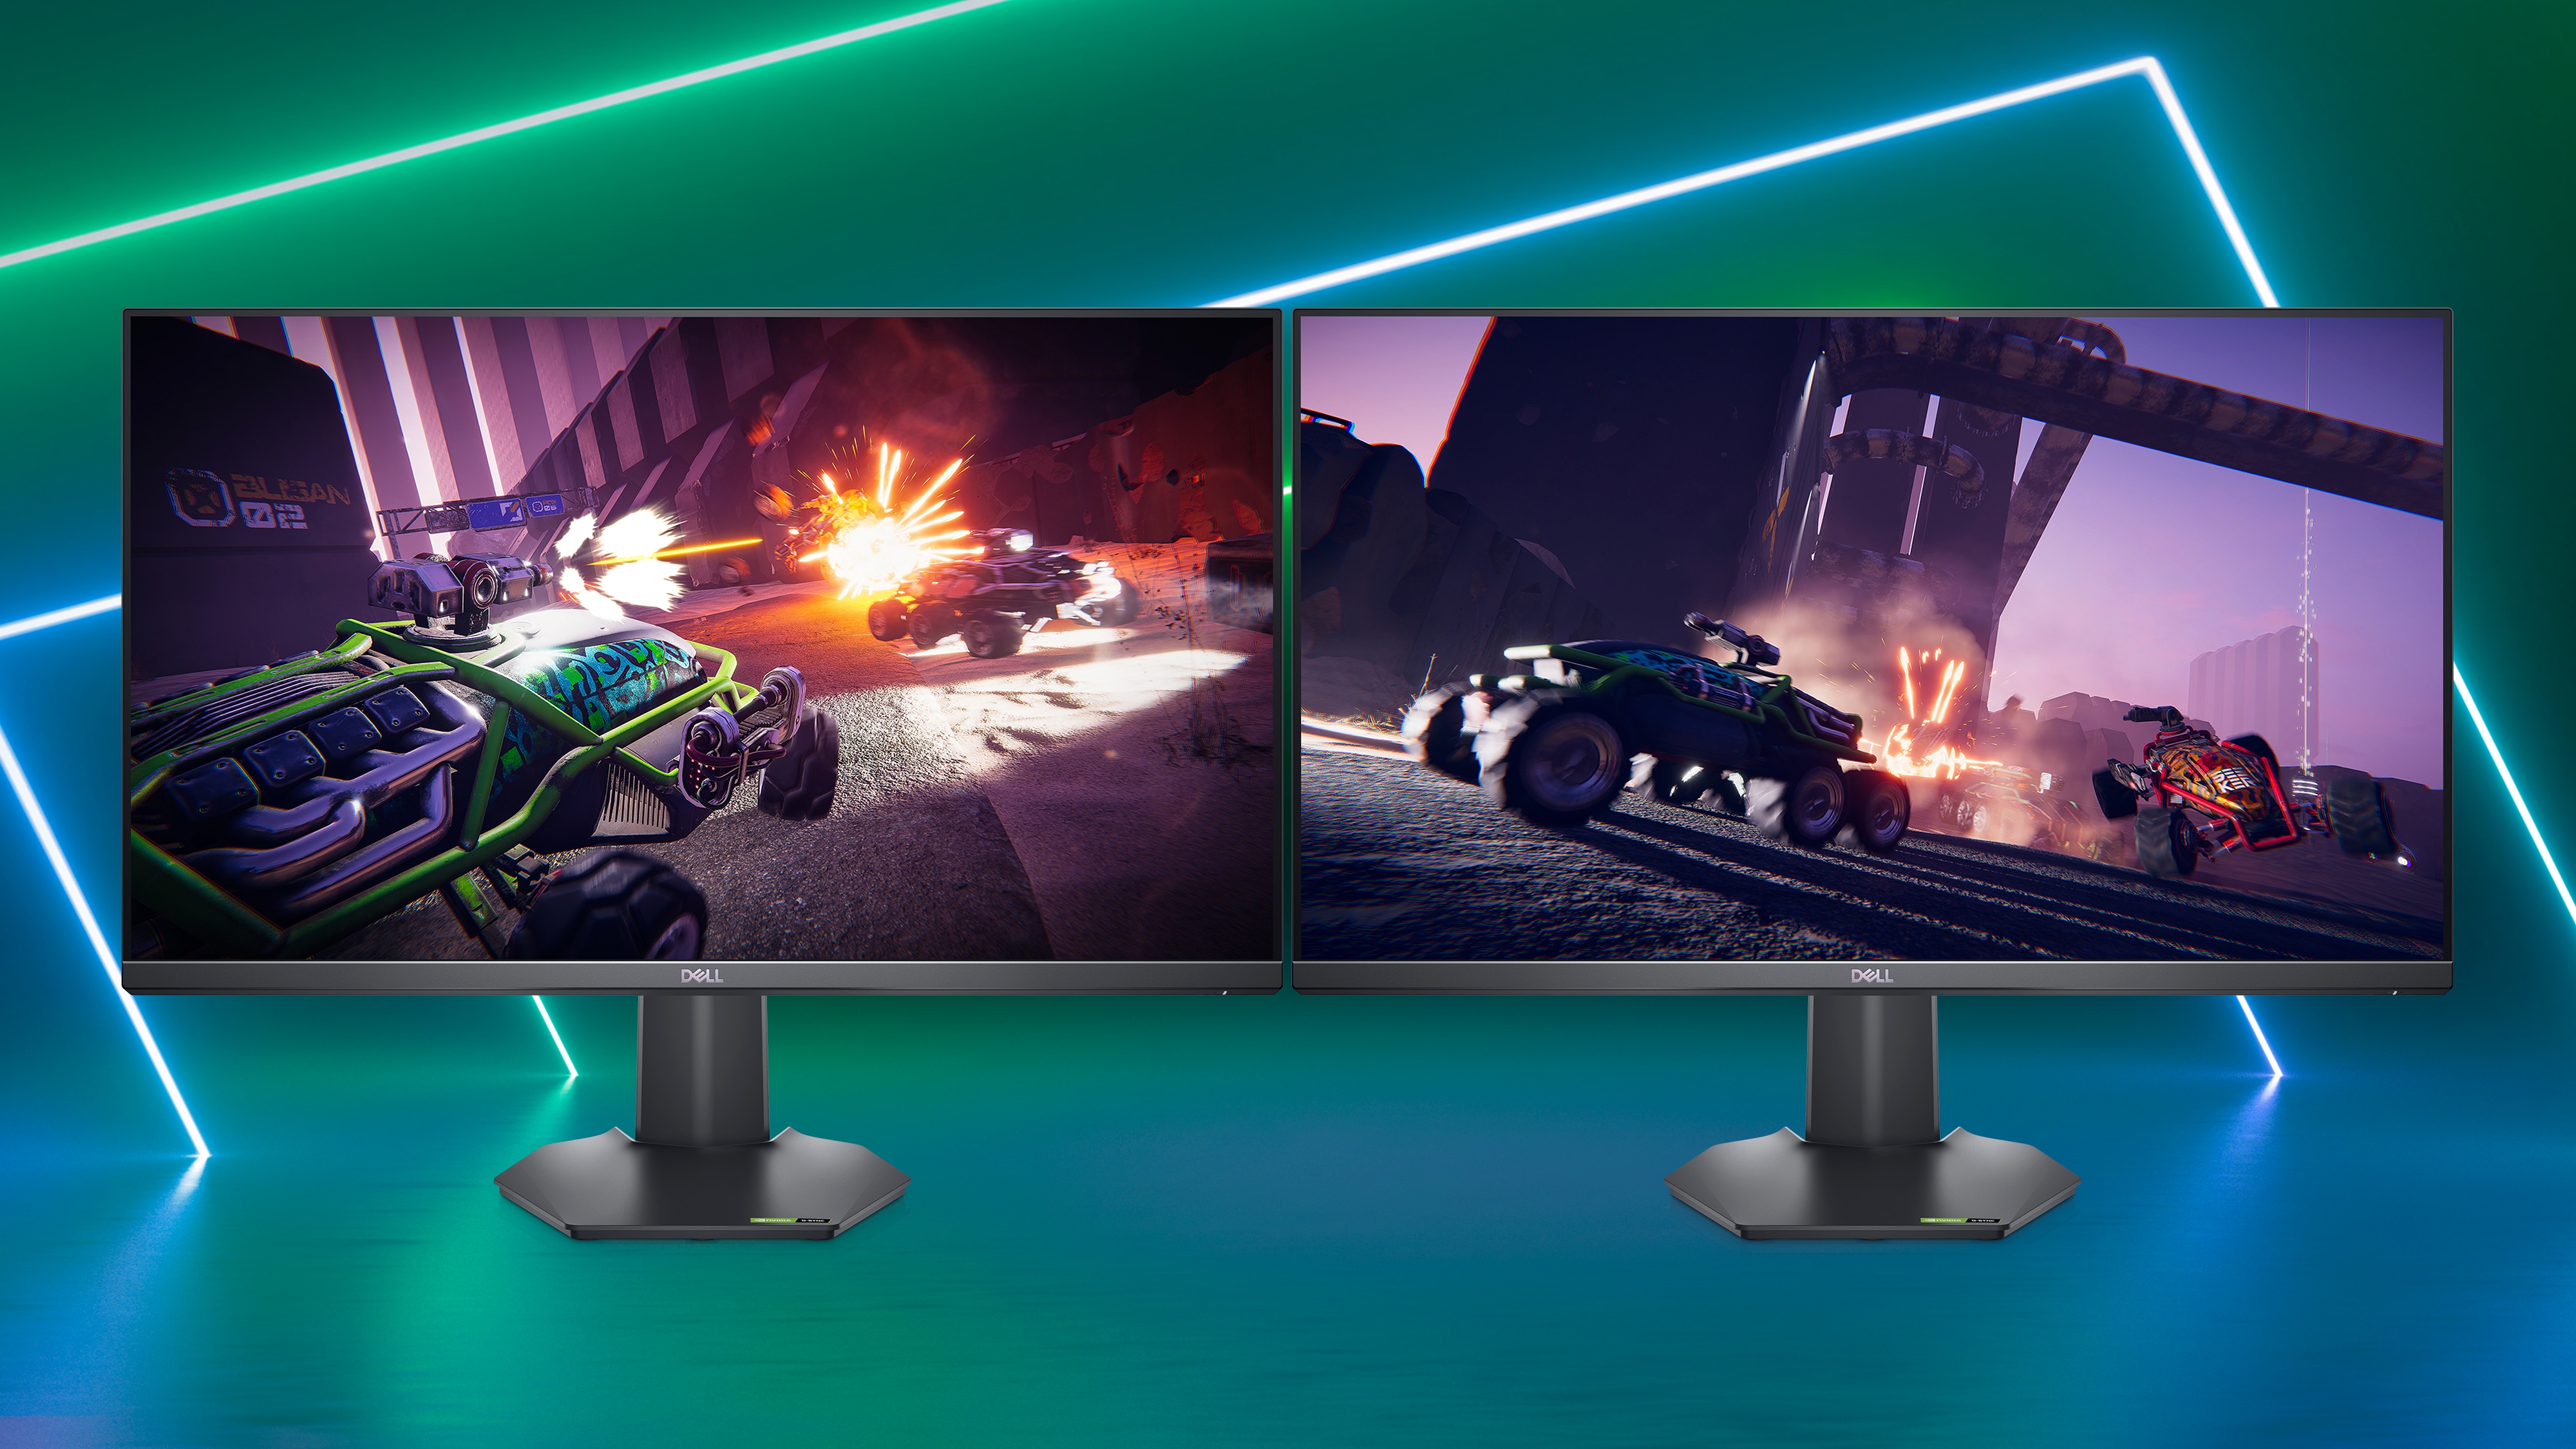 Bild von zwei Dell G2722HS Gaming-Monitoren vor einem leuchtenden blauen Hintergrund und mit einer Spielanzeige auf beiden Bildschirmen.